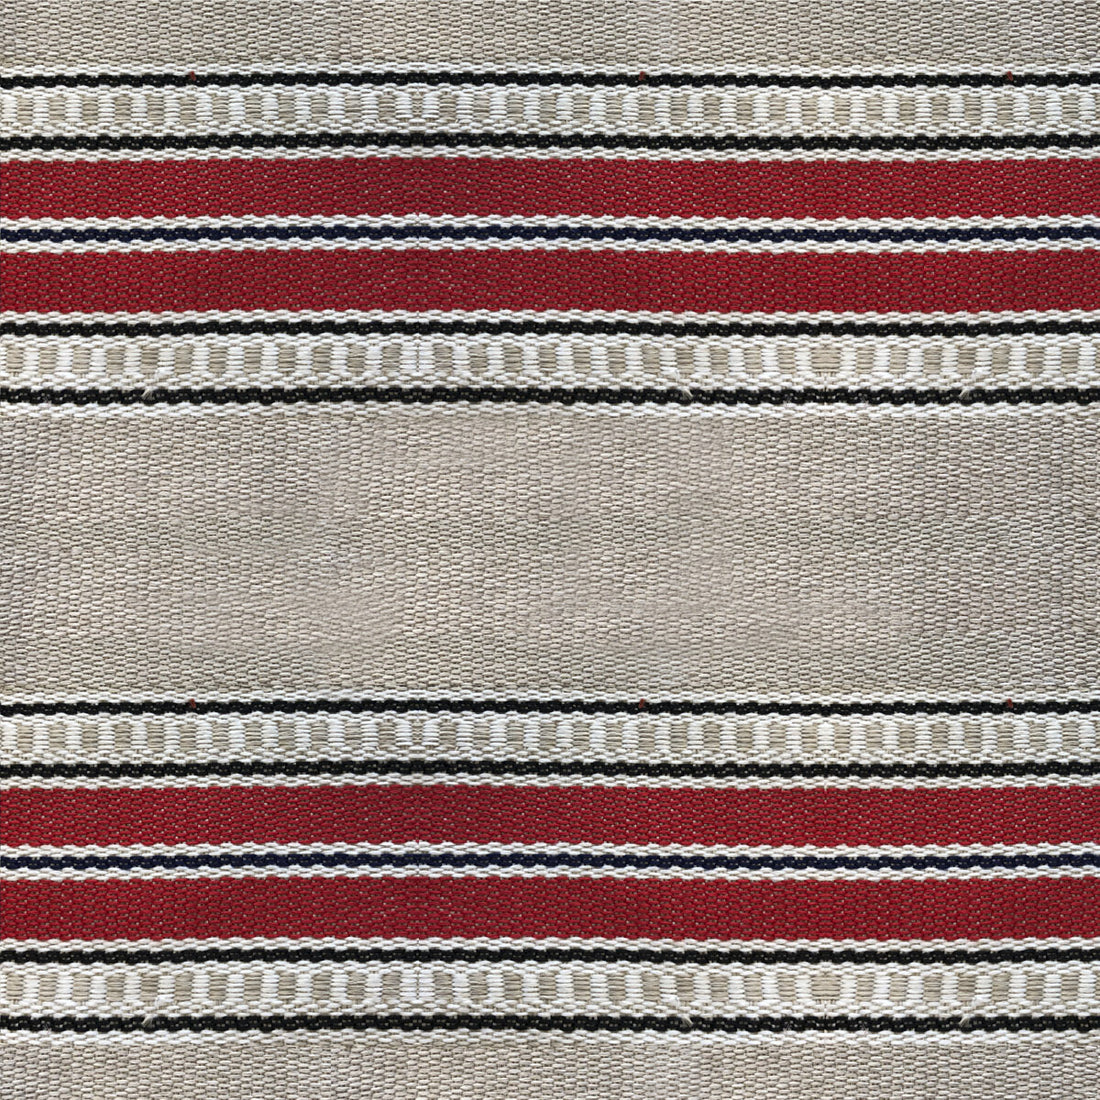 Adam fabric in rojo color - pattern LCT1068.004.0 - by Gaston y Daniela in the Lorenzo Castillo VI collection